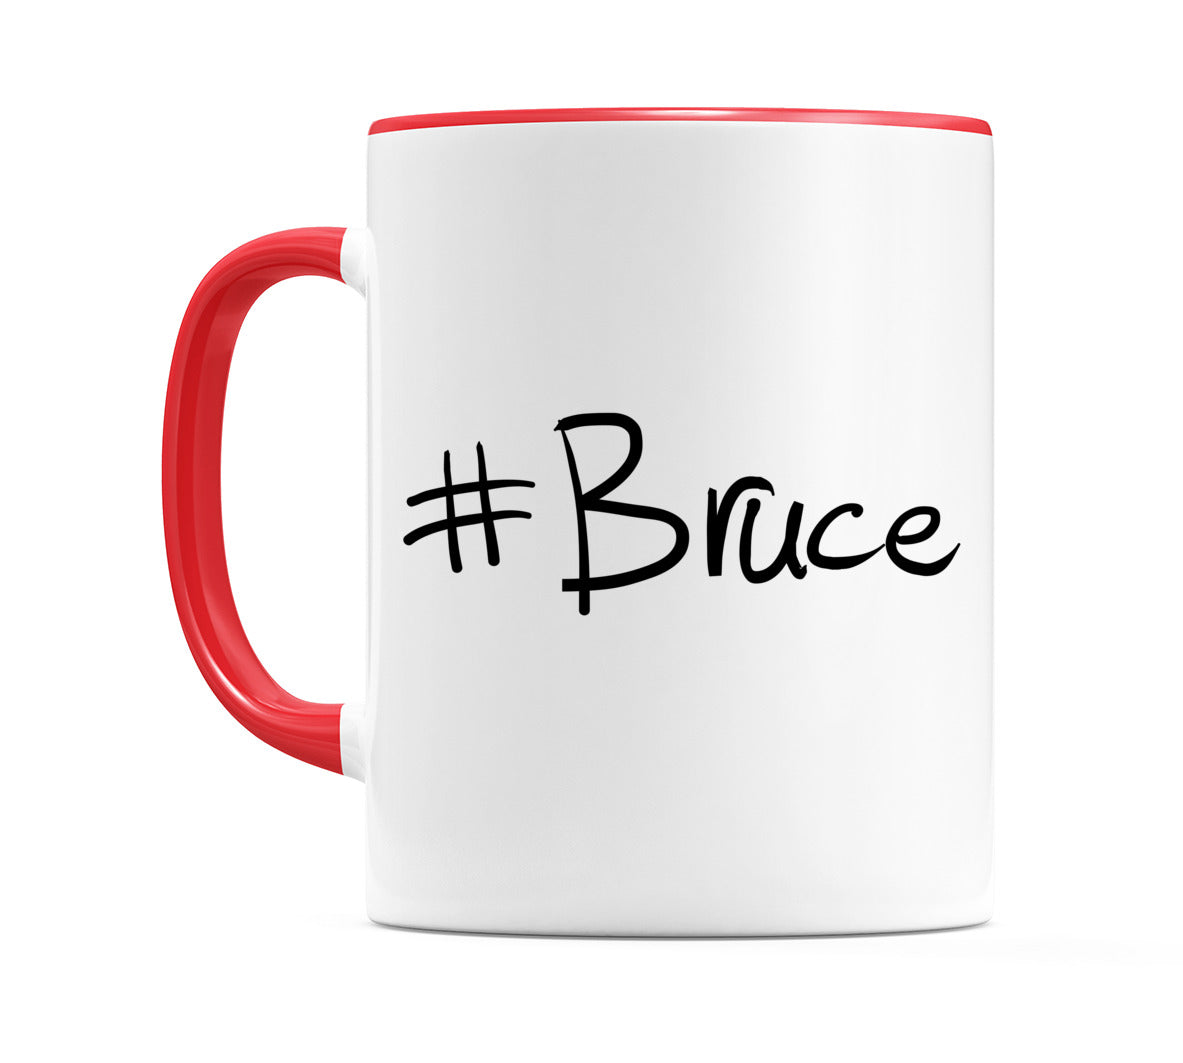 #Bruce Mug